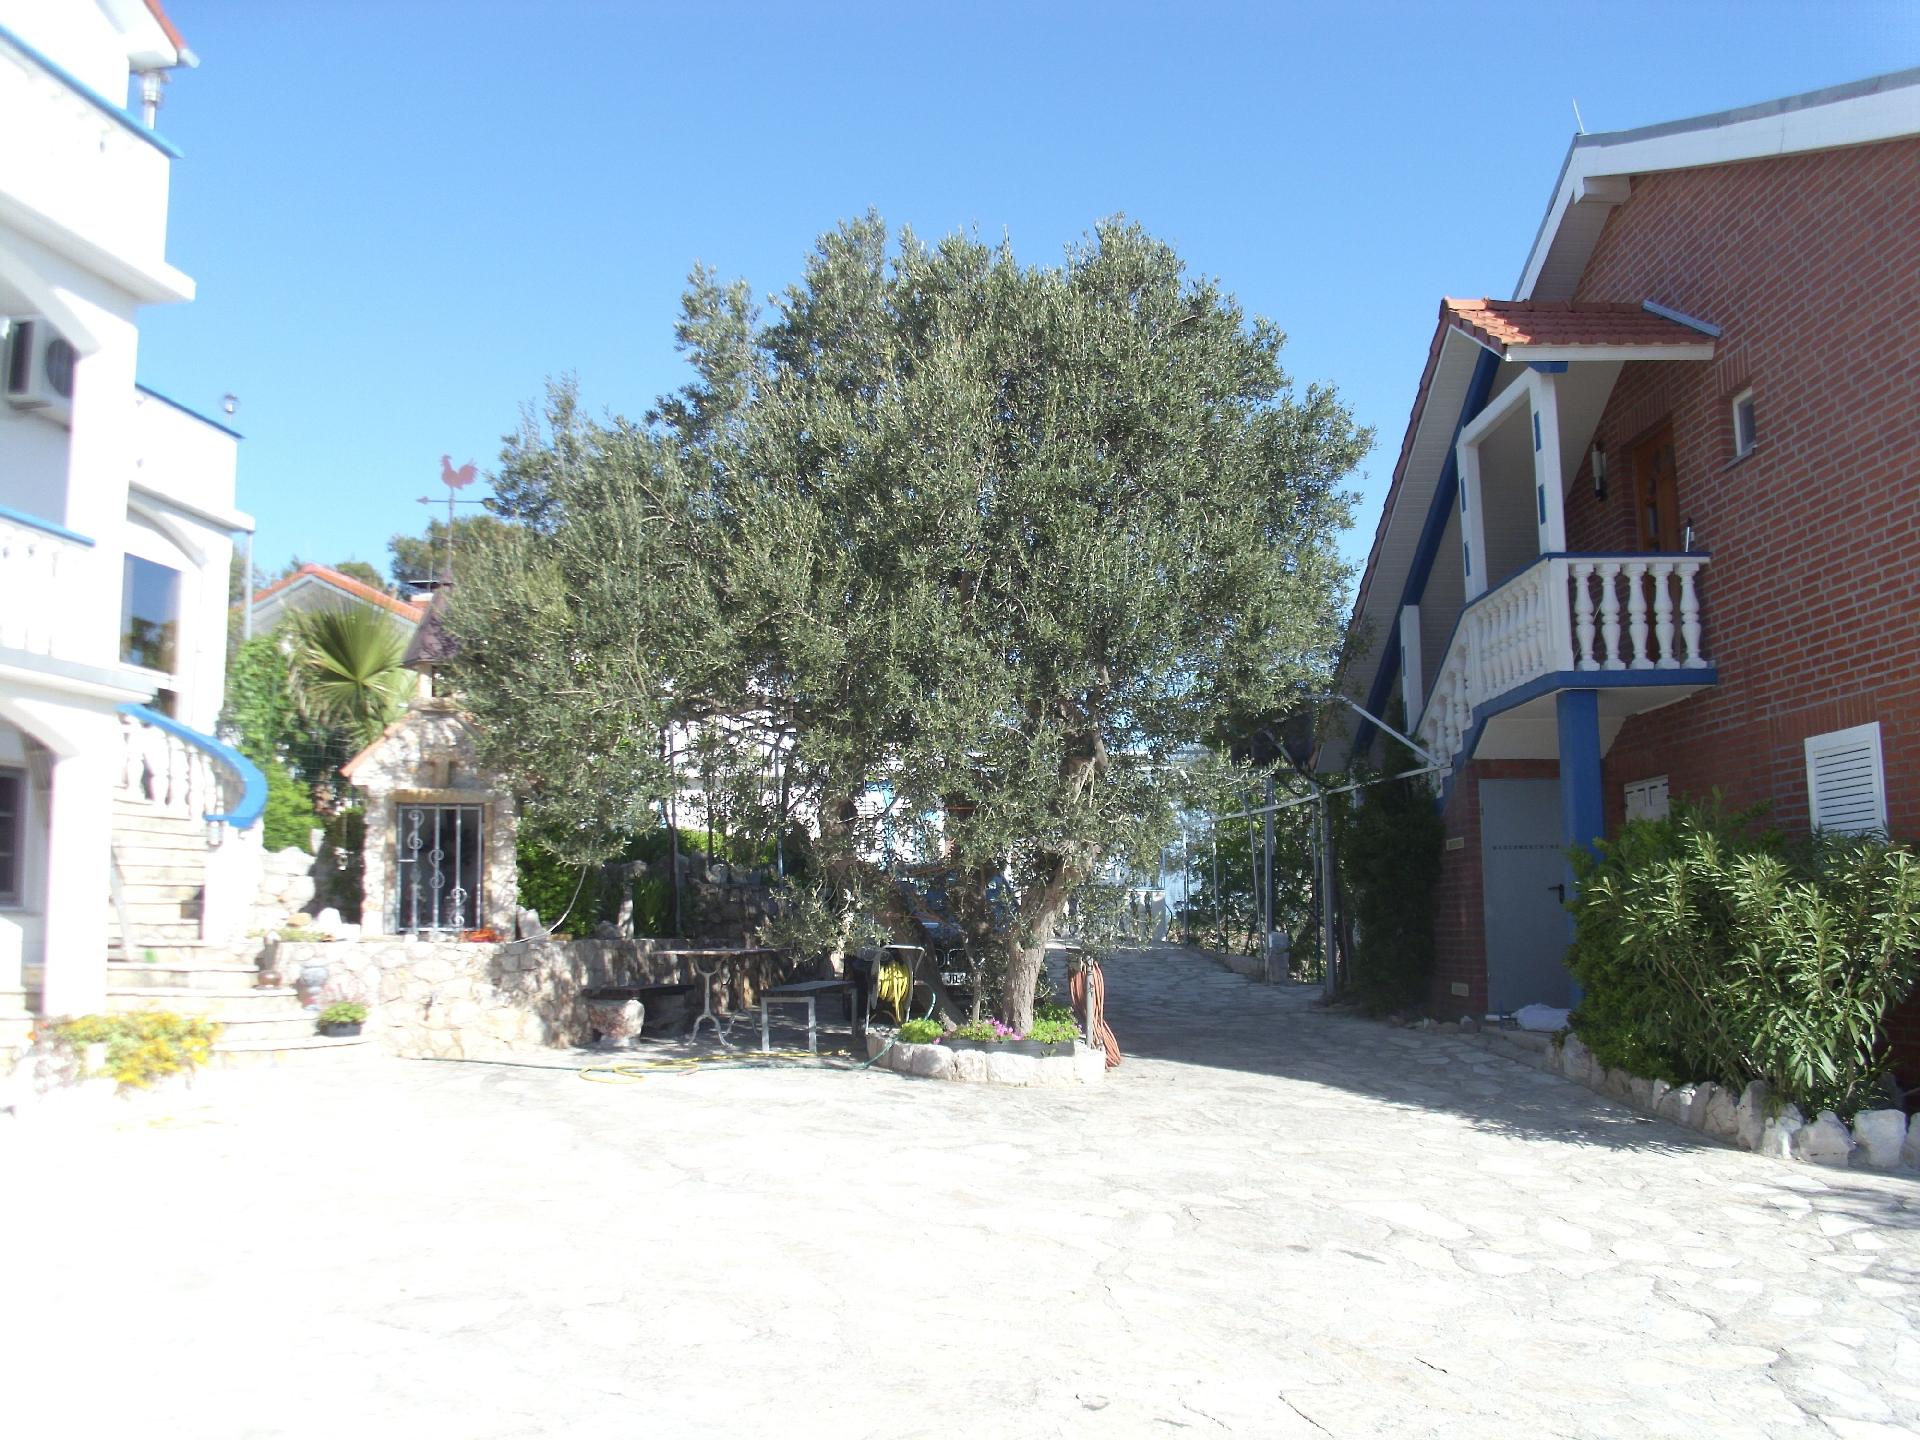 Ferienwohnung für vier Personen mit Terrasse  Ferienhaus  kroatische Inseln